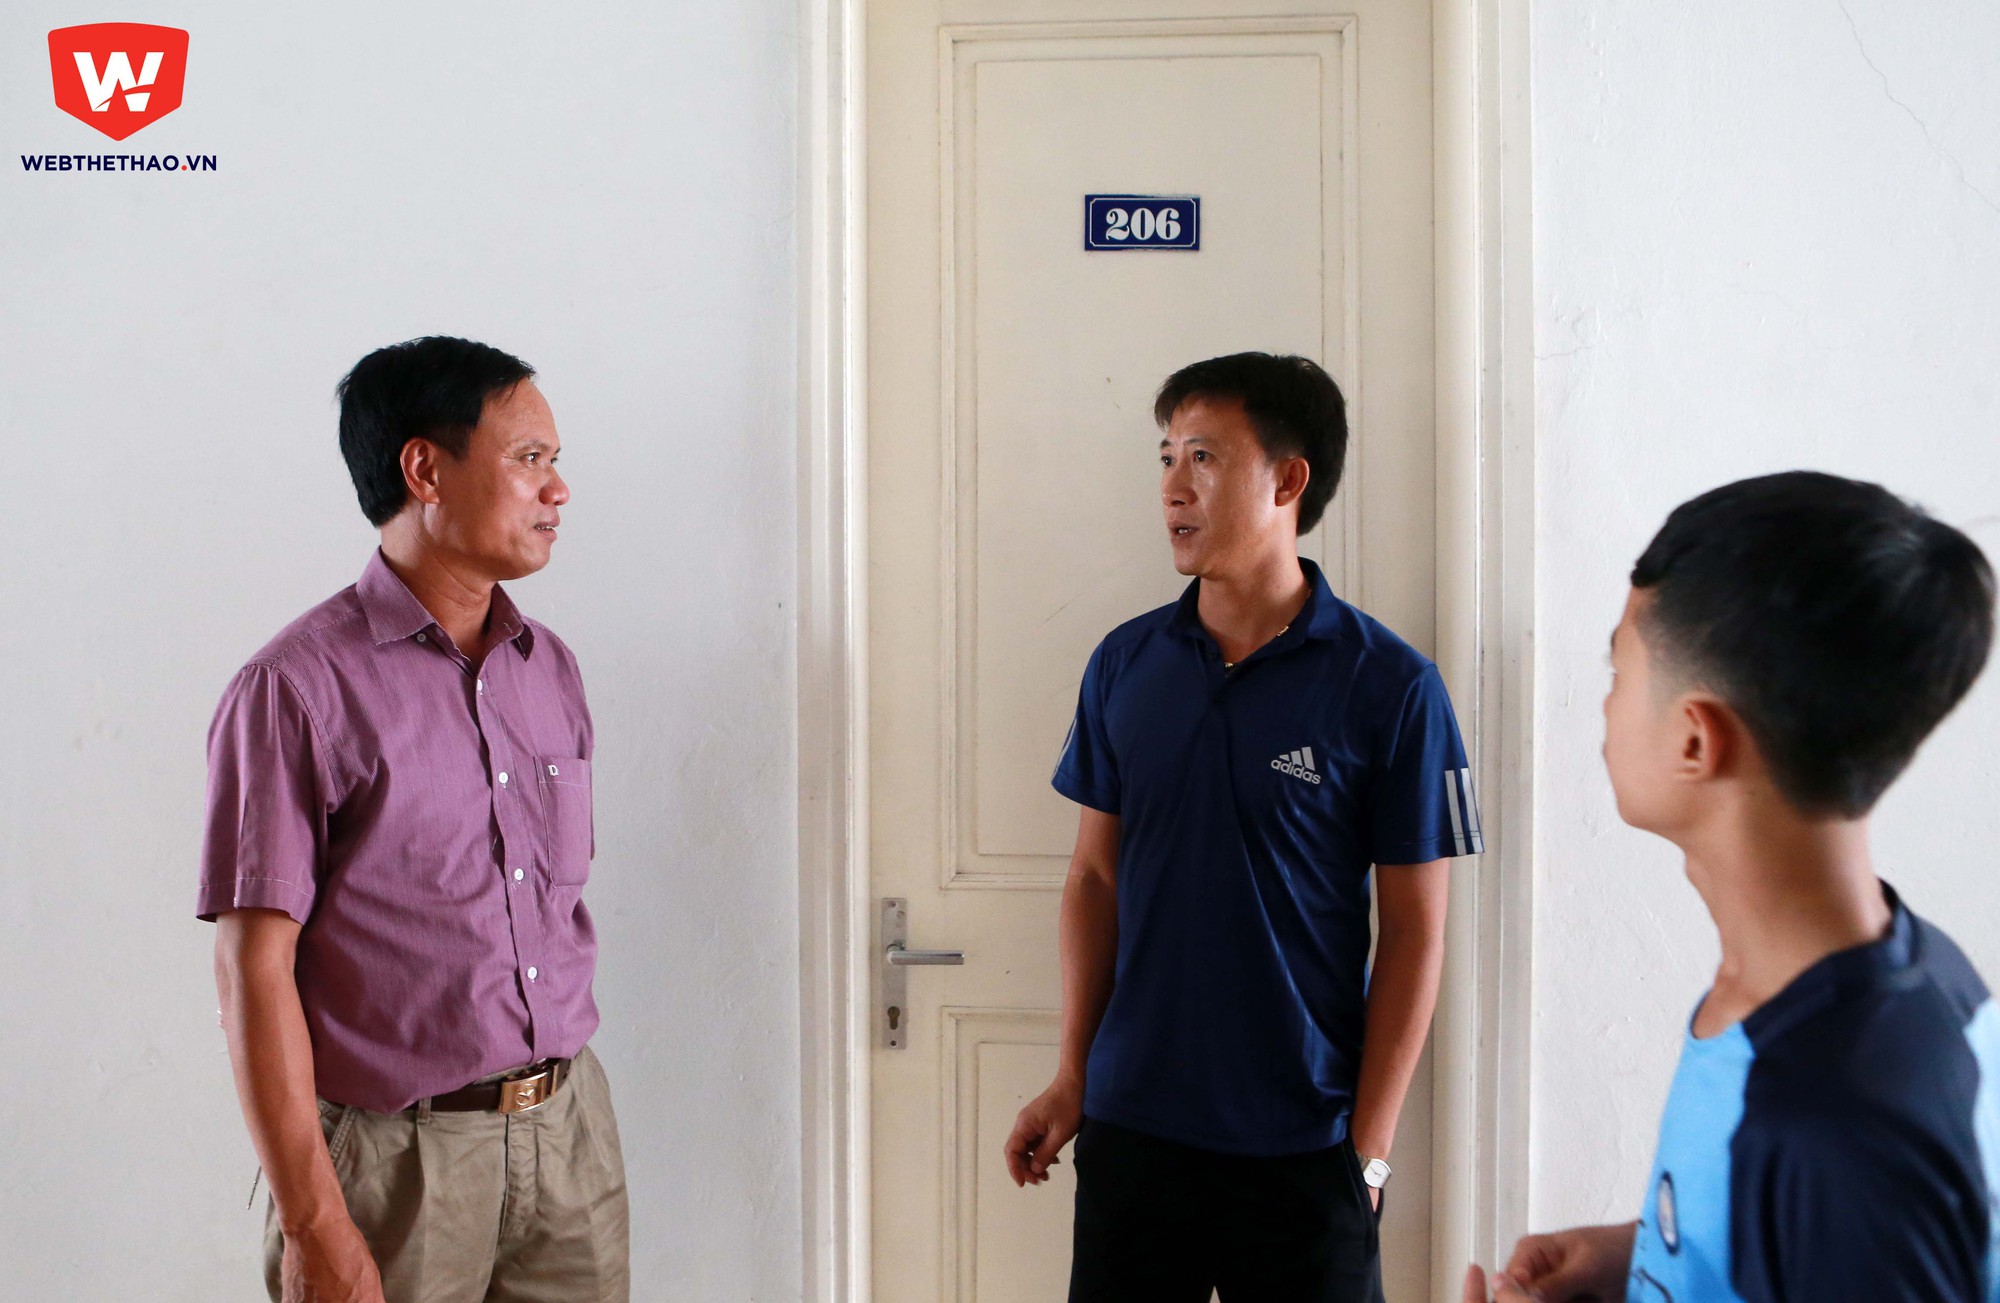 Tại Hà Nội, công tác đón VĐV cũng được tiến hành. Trong ảnh, phụ huynh em Nam Anh (THCS Ngọc Lâm, Hà Nội) trao đổi cùng HLV Thành Công. Nam Anh cũng là cầu thủ duy nhất của đơn vị chủ nhà.